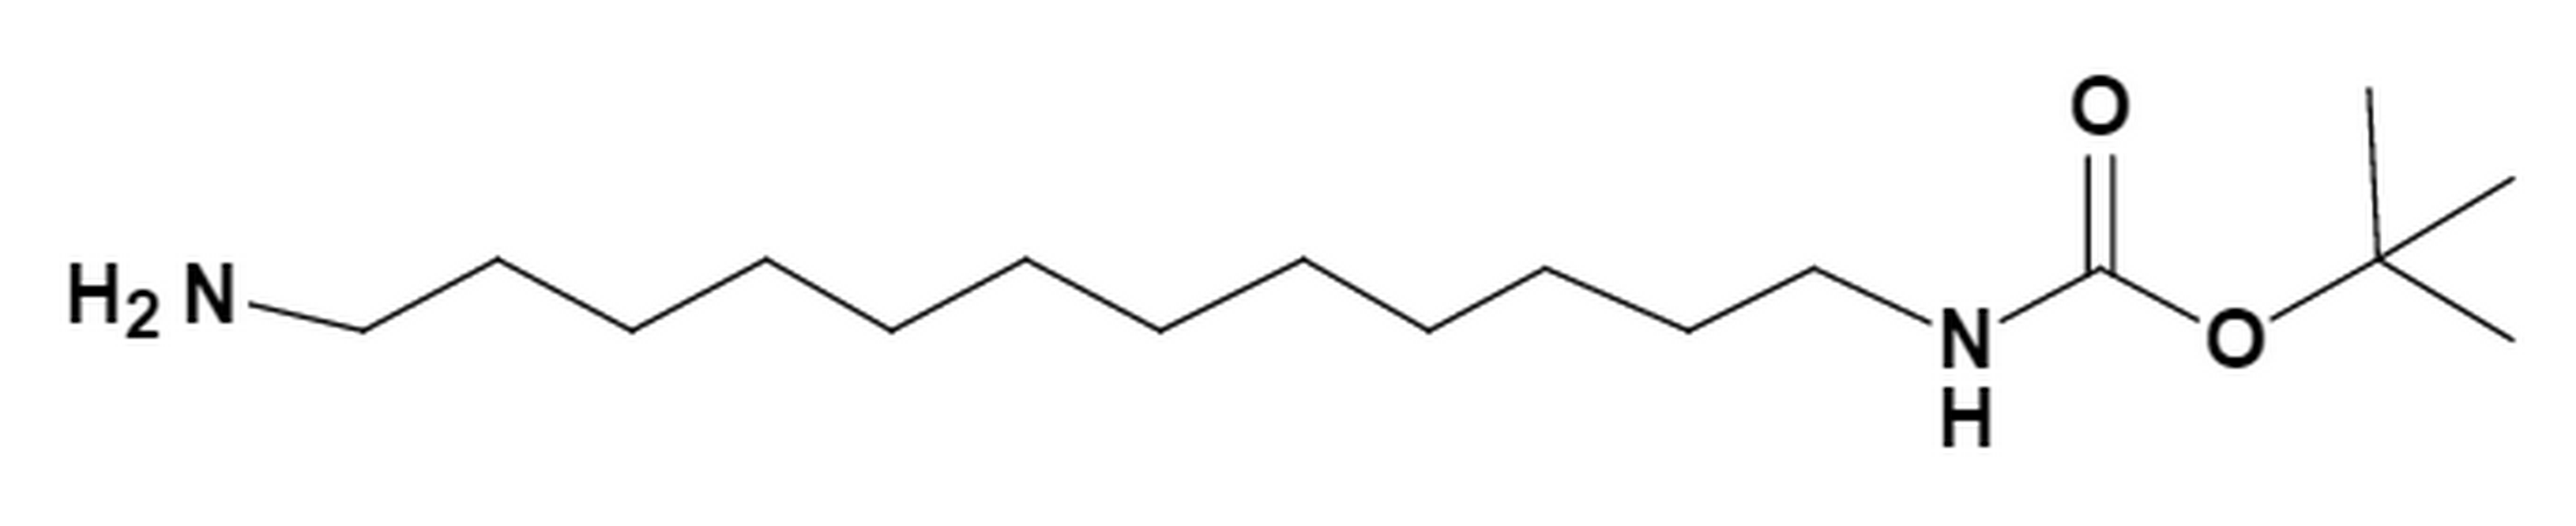 t-Boc-N-Amido-(CH2)12-amine